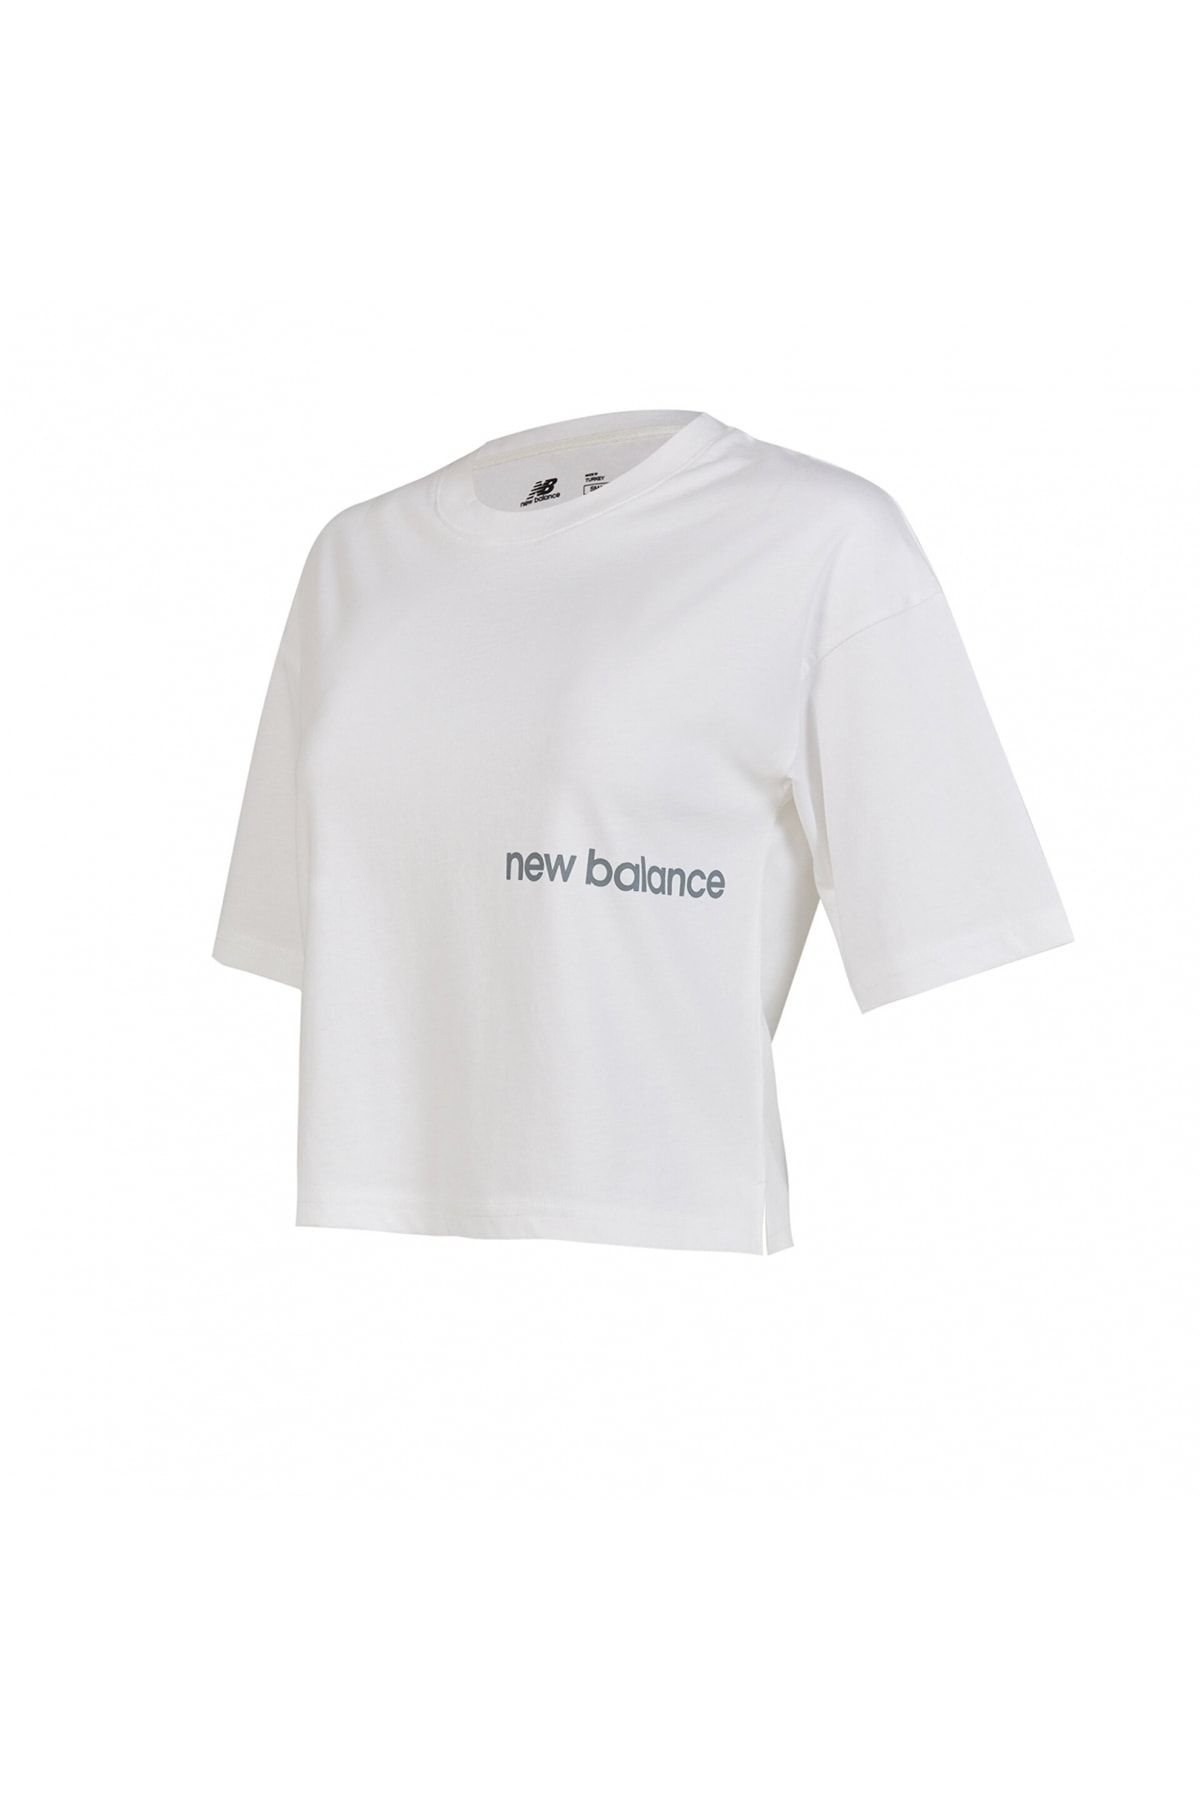 New Balance Lifestyle Beyaz Kadın Tişört Wnt1340-wt